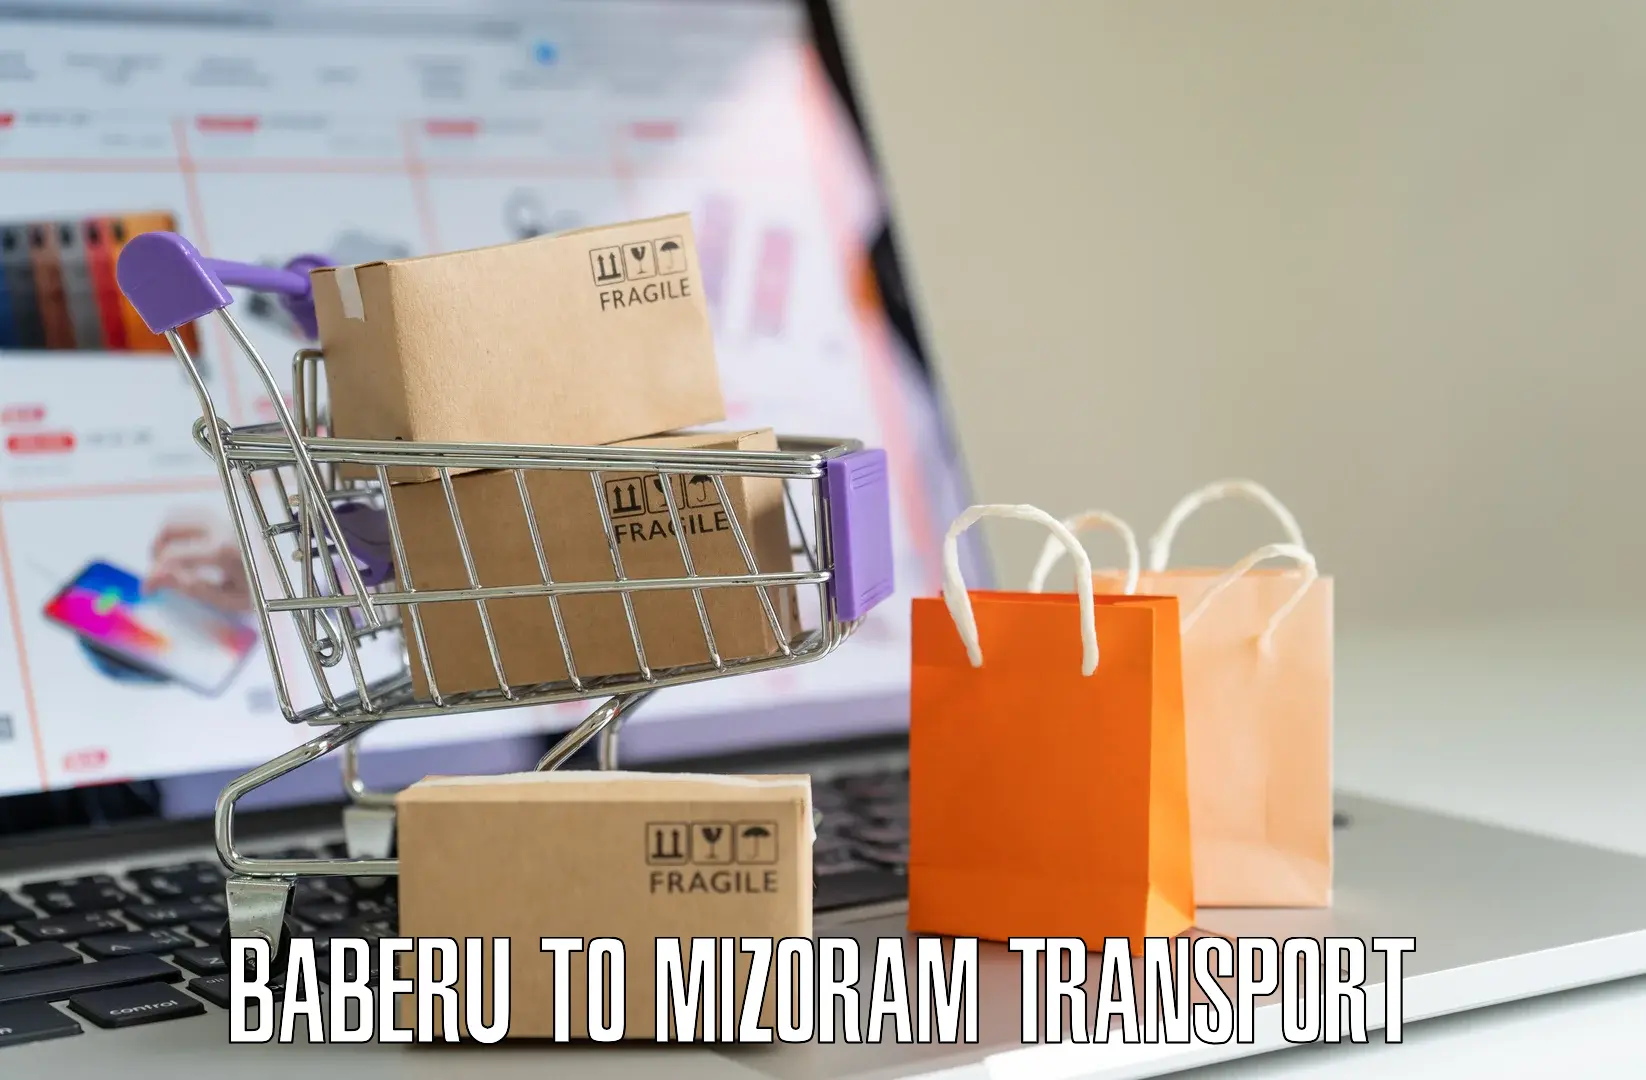 Bike transport service Baberu to Mizoram